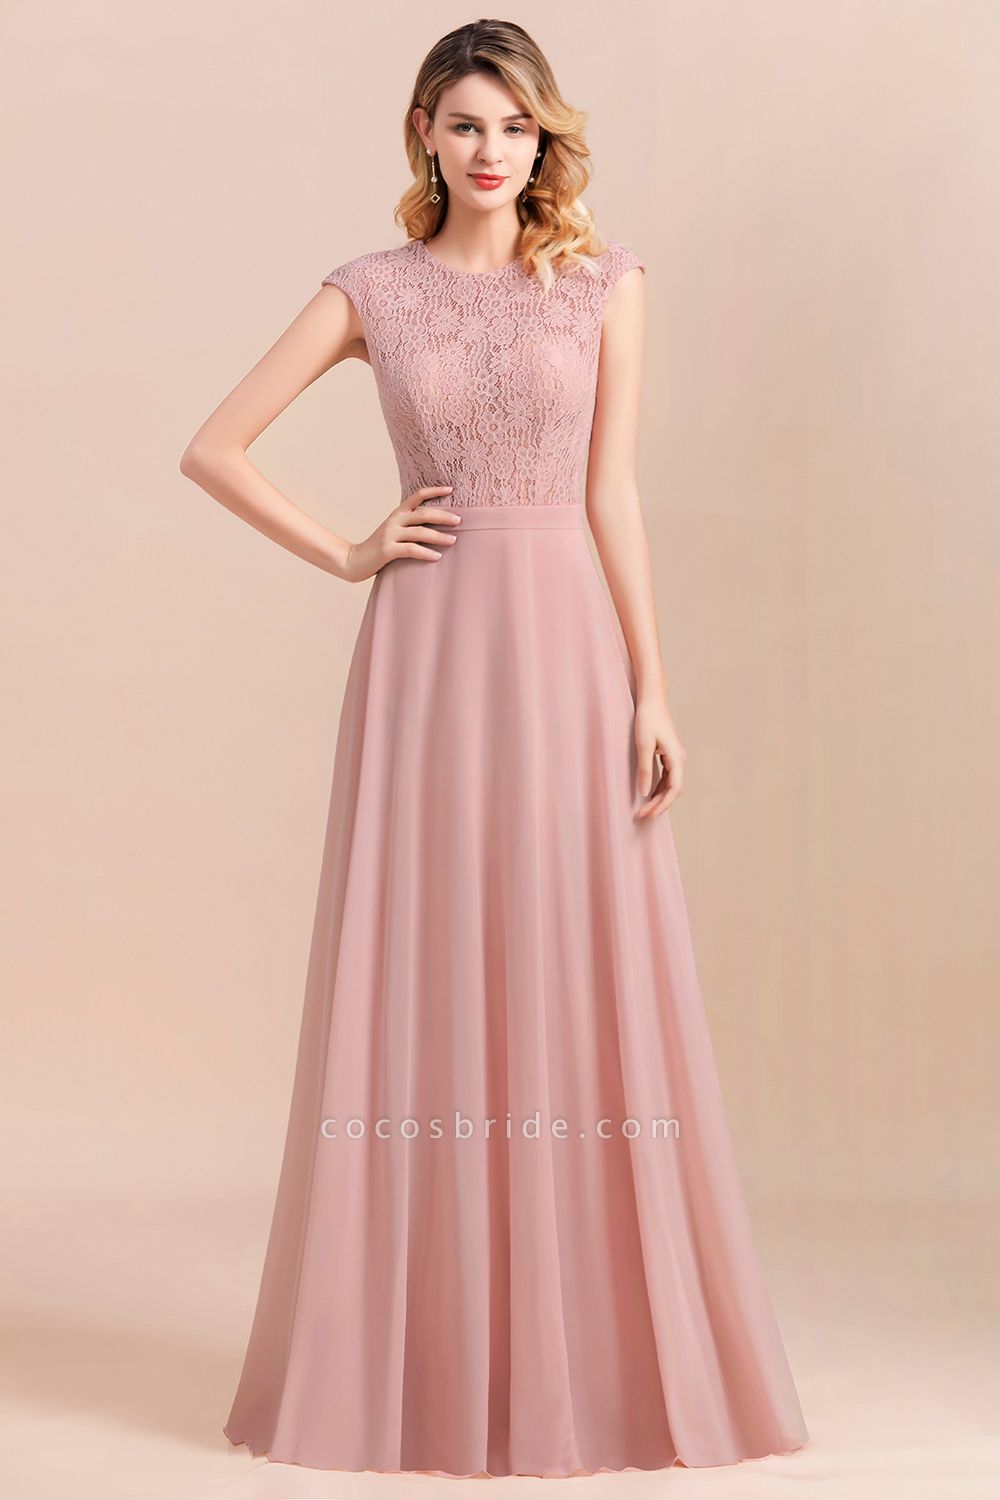 Classy Bateau Soft Lace Chiffon Evening Dress Sleveless A-Line Long Bridesmaid Dress